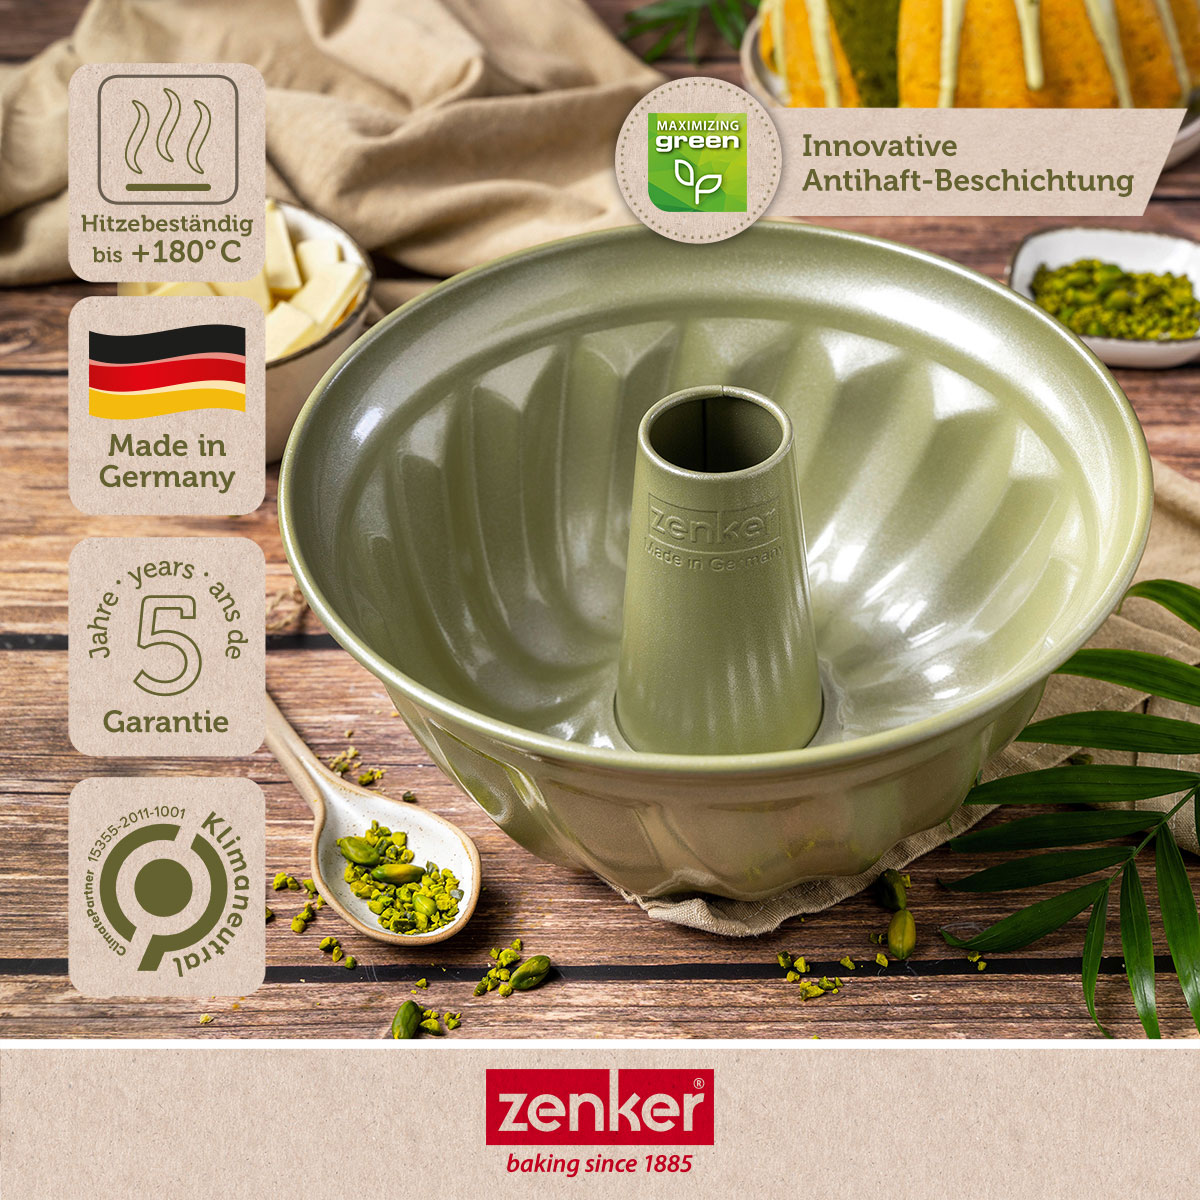 Stampo Budino Deluxe 22Cm Zenker. Cod. 040816 - Borz Cooking Store